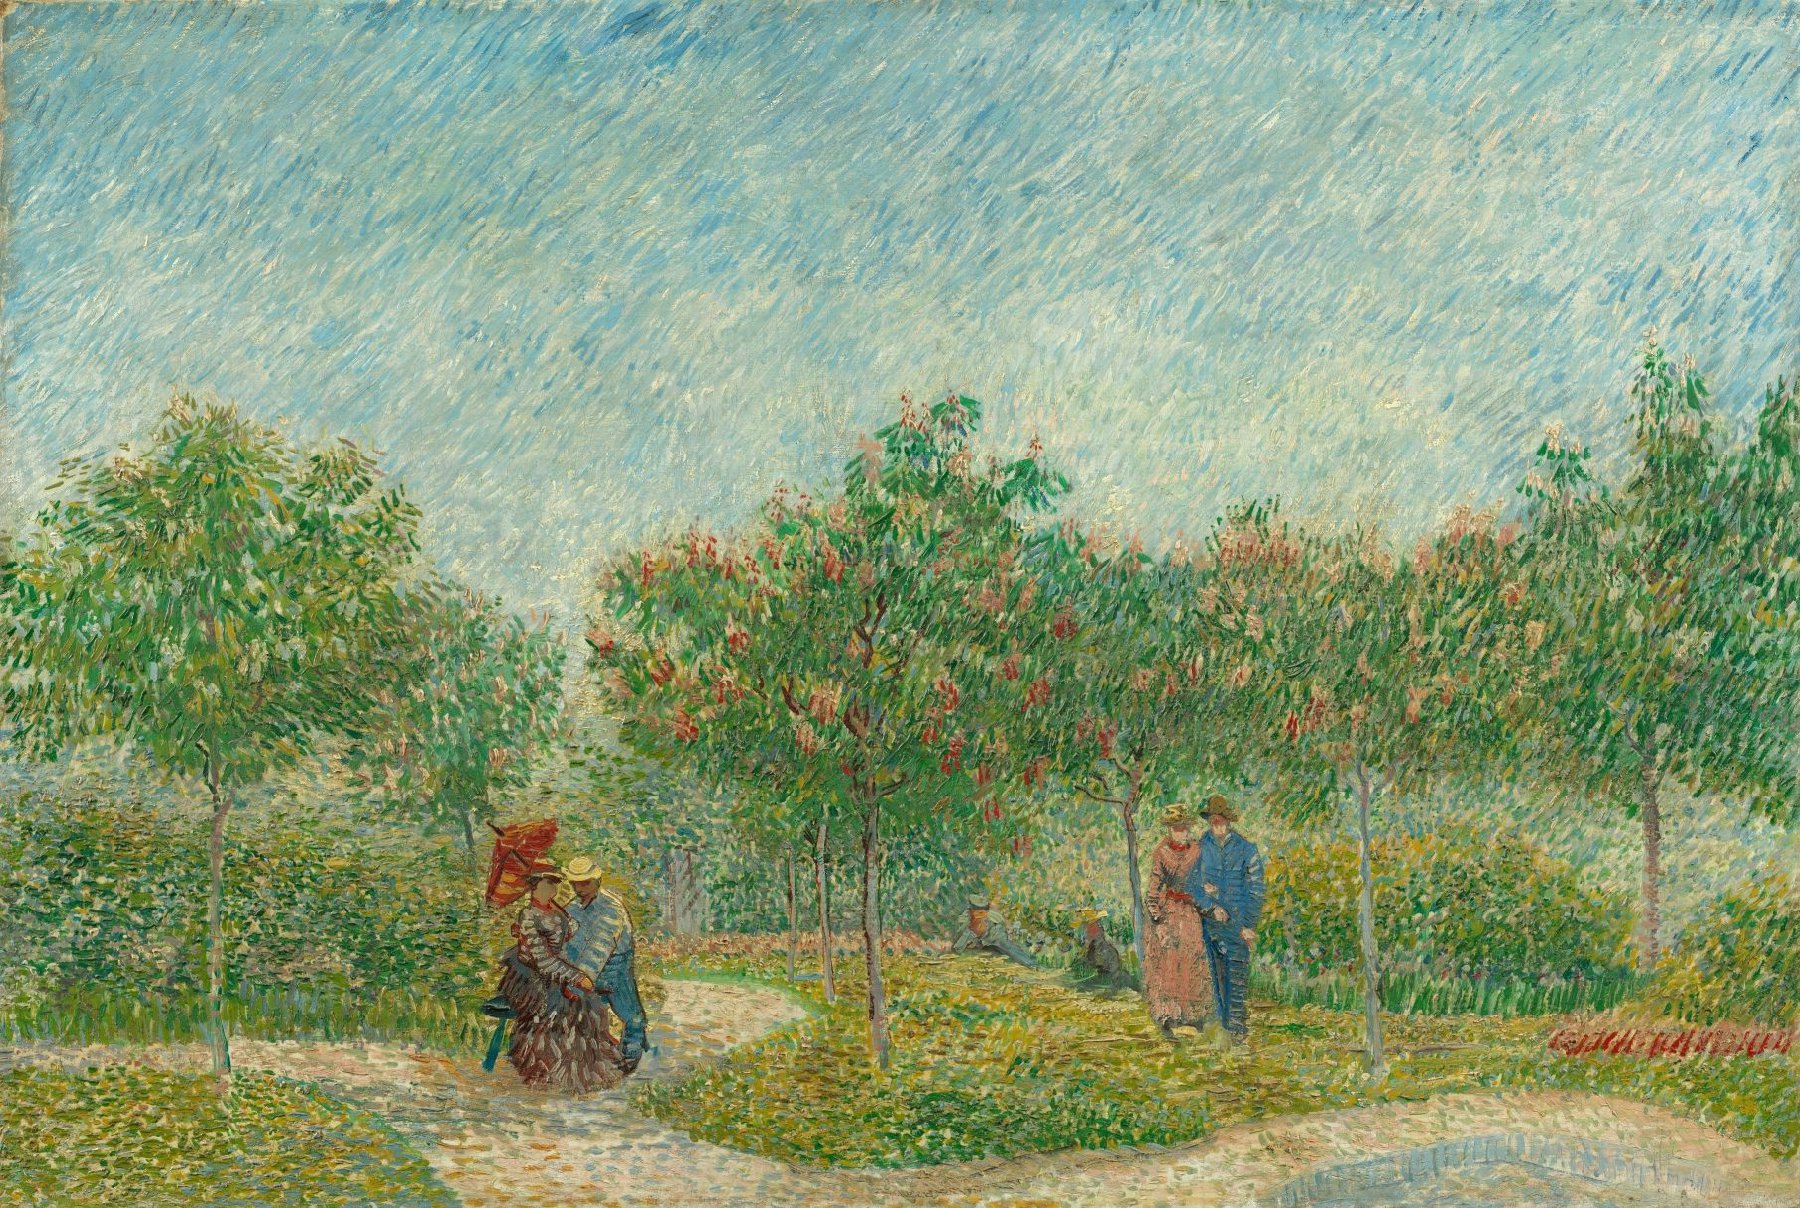 Tuin met geliefden: Square Saint-Pierre Vincent van Gogh (1853 - 1890), Parijs, mei 1887